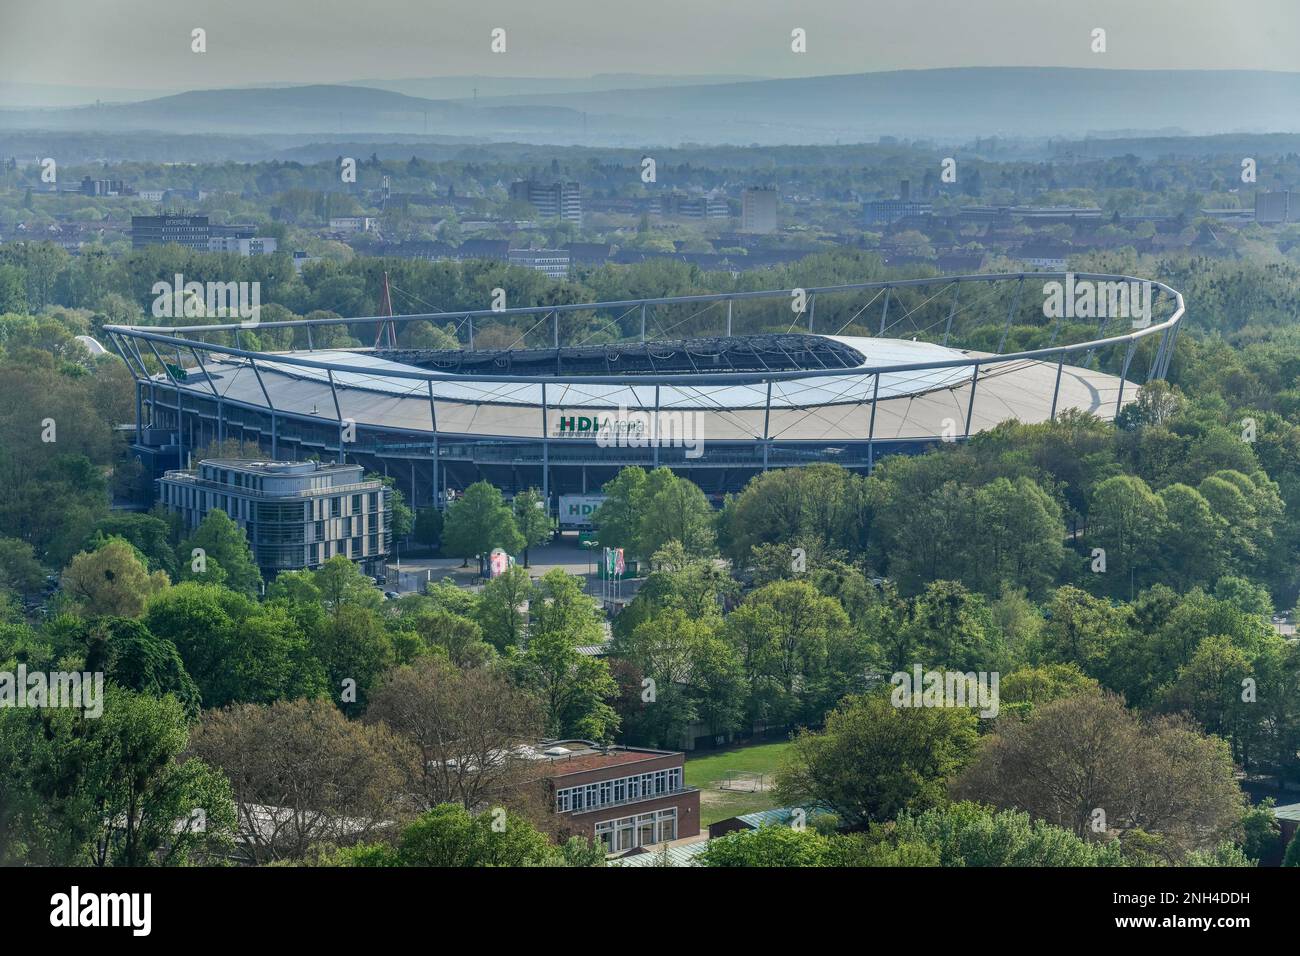 HDI Arena football stadium, Hanover, Lower Saxony, Germany Stock Photo